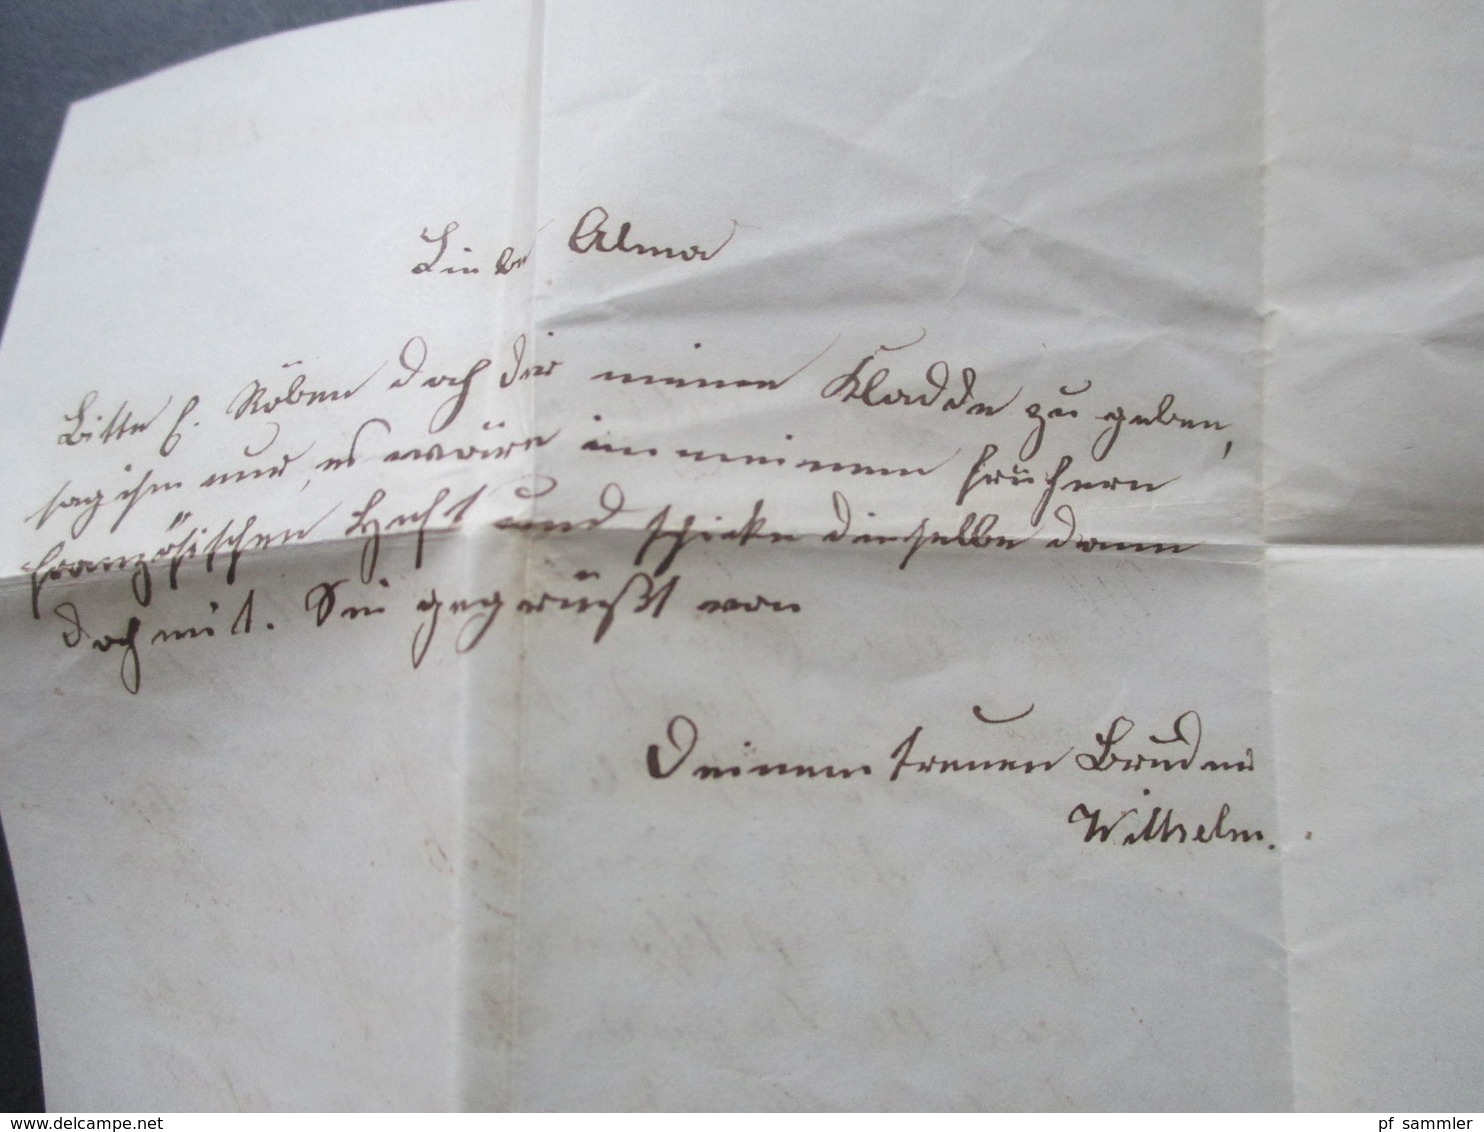 AD Oldenburg 1862 Paketbegleitbrief von Stollhamm nach Oldenburg mit Ortszettel Nr. 841 a. Stollhamm und R2. Bartaxe. RR